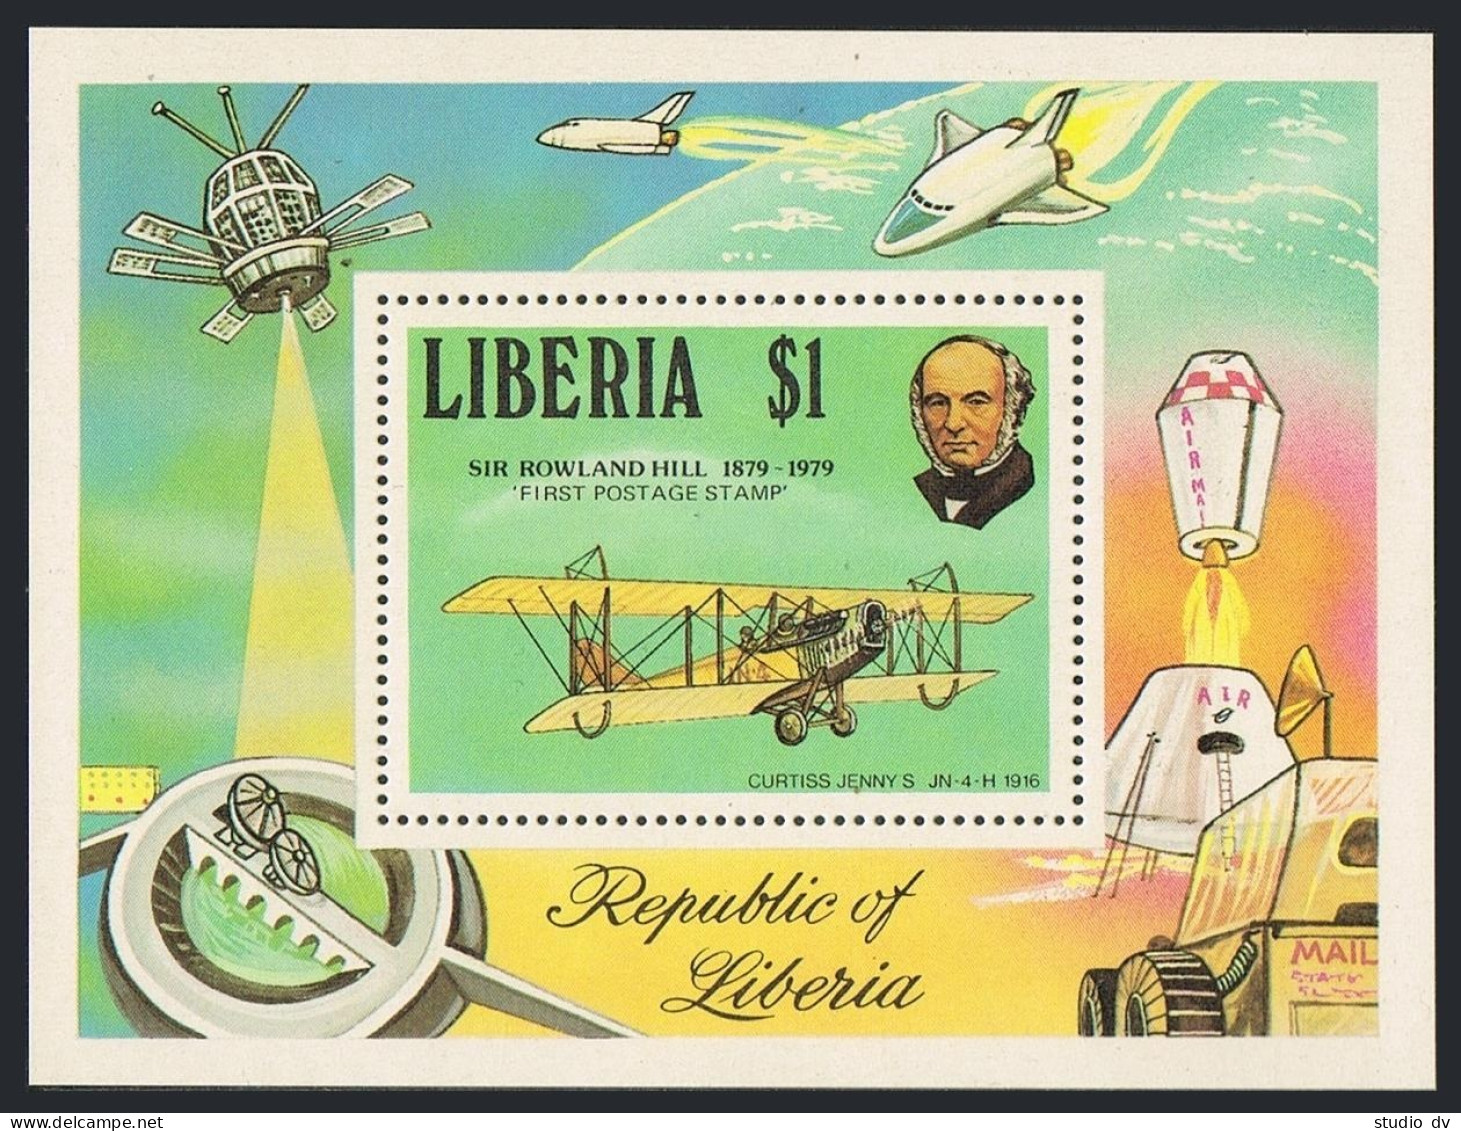 Liberia 842-848,MNH.Michel 1098-1103,Bl.93. Sir Rowland Hill.UPU.Concorde,Train, - Liberia